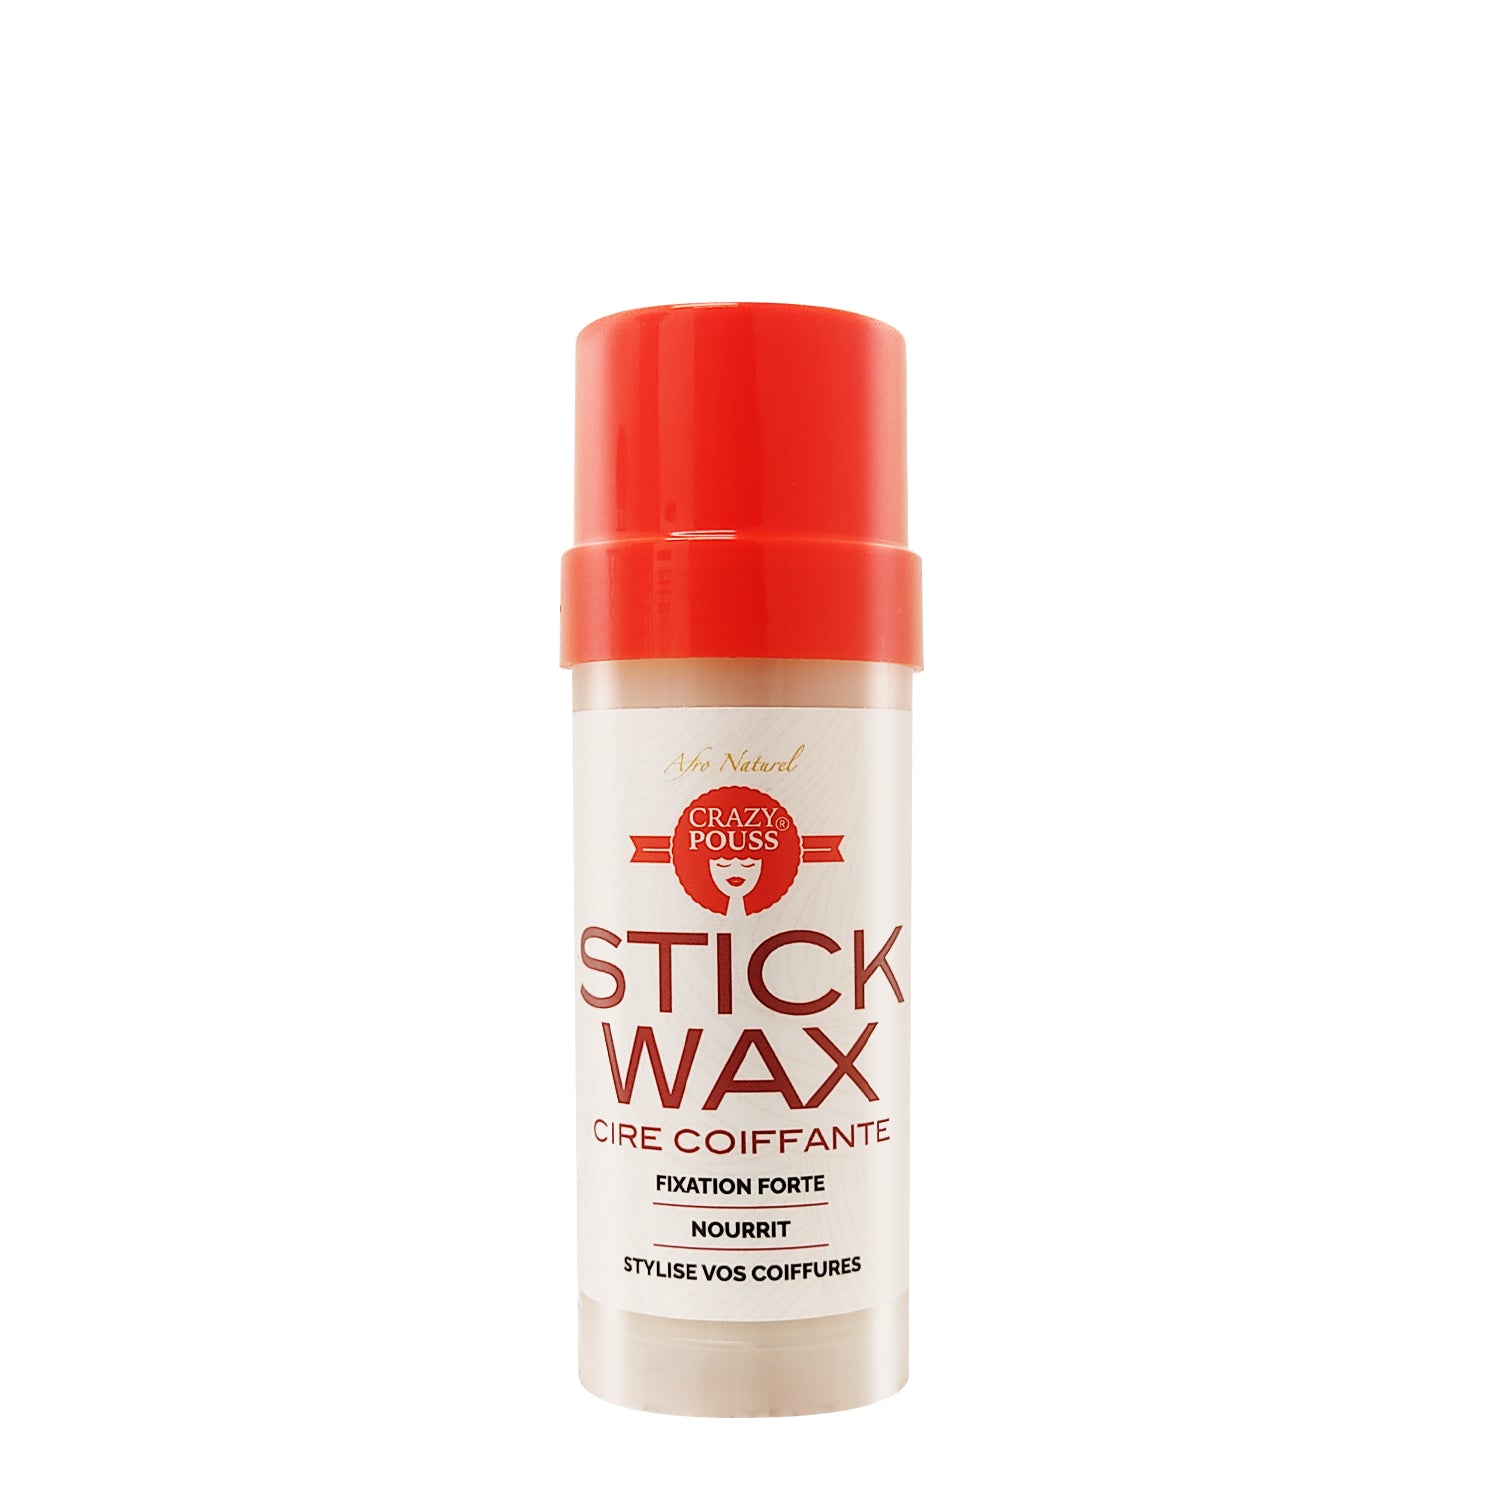 CRAZY POUSS - Stick wax cire coiffante - Produit capillaire pour structurer et maintenir efficacement vos styles de coiffures